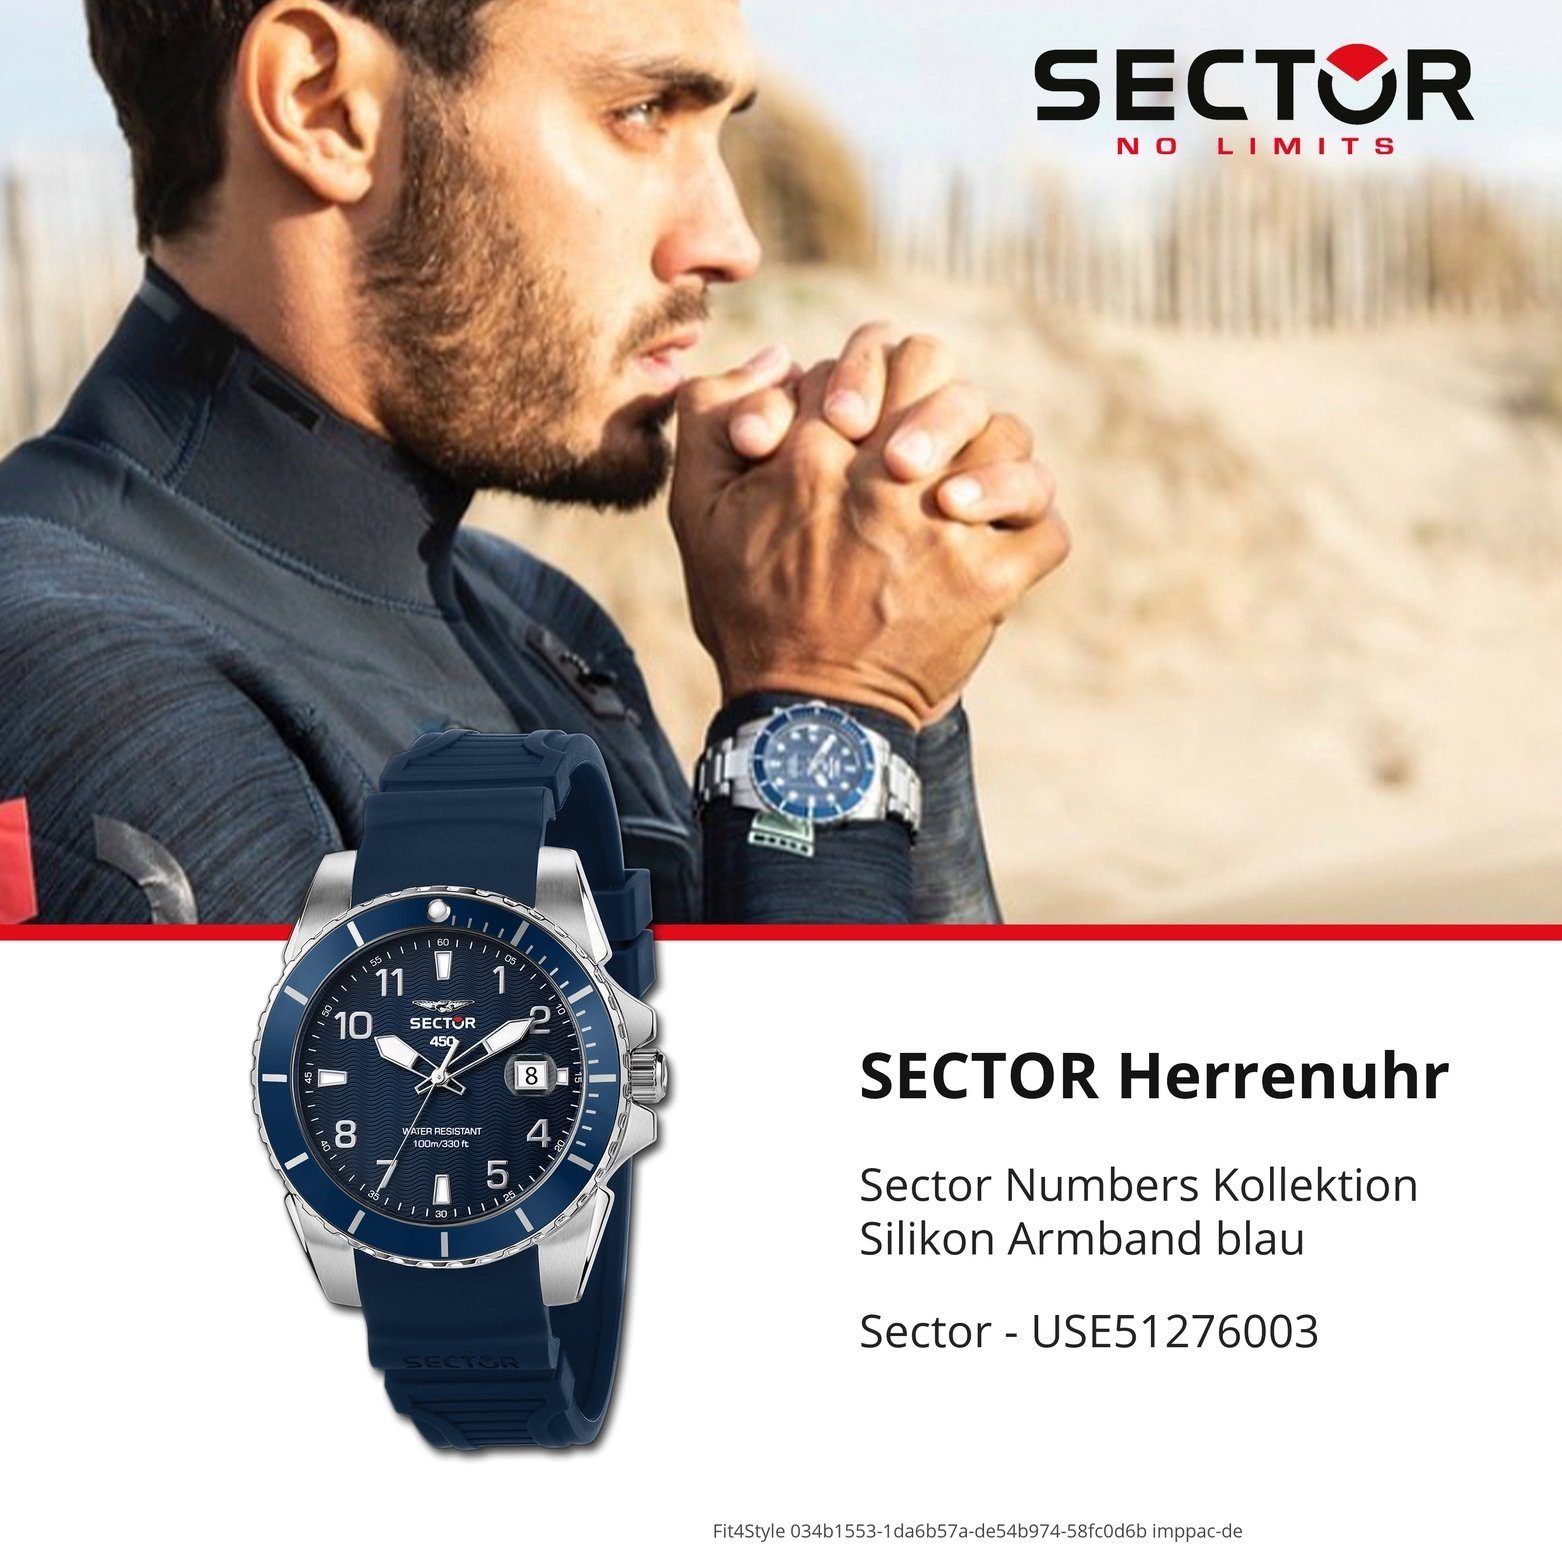 Silikonarmband 44mm), Herren Fashion Sector Armbanduhr (ca. Analog, groß rund, Quarzuhr Sector Herren blau, Armbanduhr